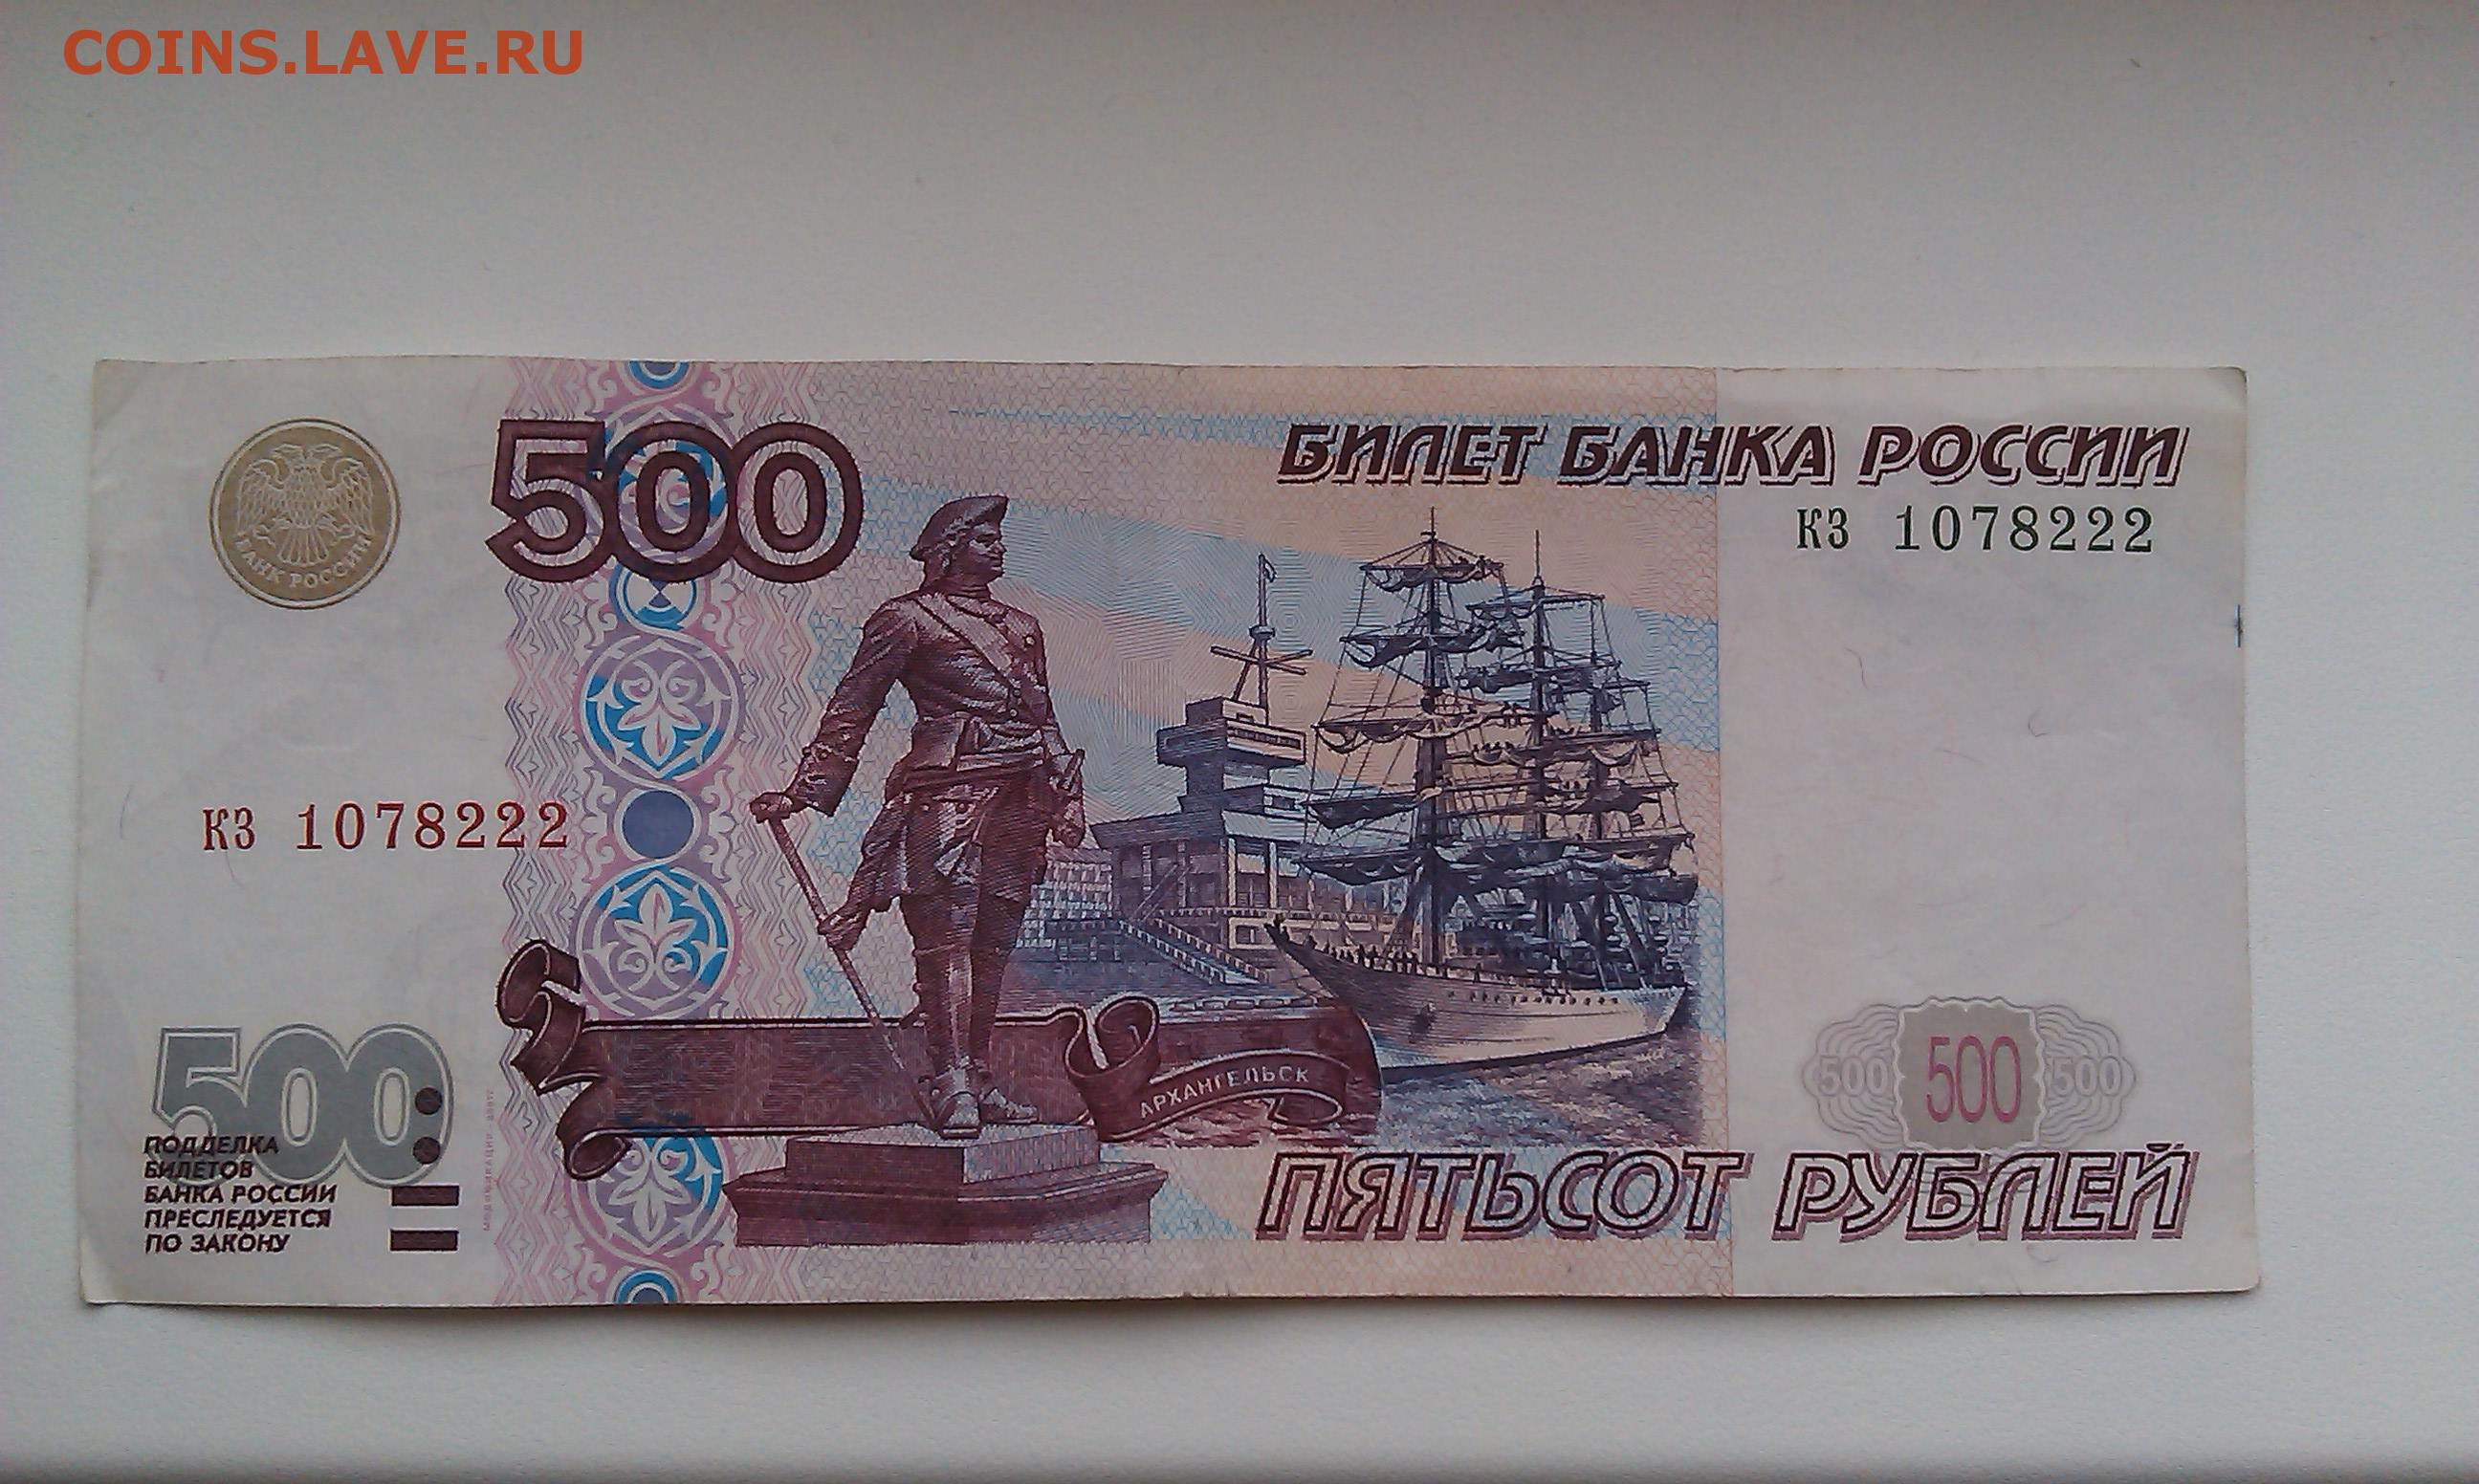 500 рублей 250. 500 Рублей с корабликом. 500 Рублей 1997. 250 Рублей 1997. 500 Рублей 1997 мод 2001.